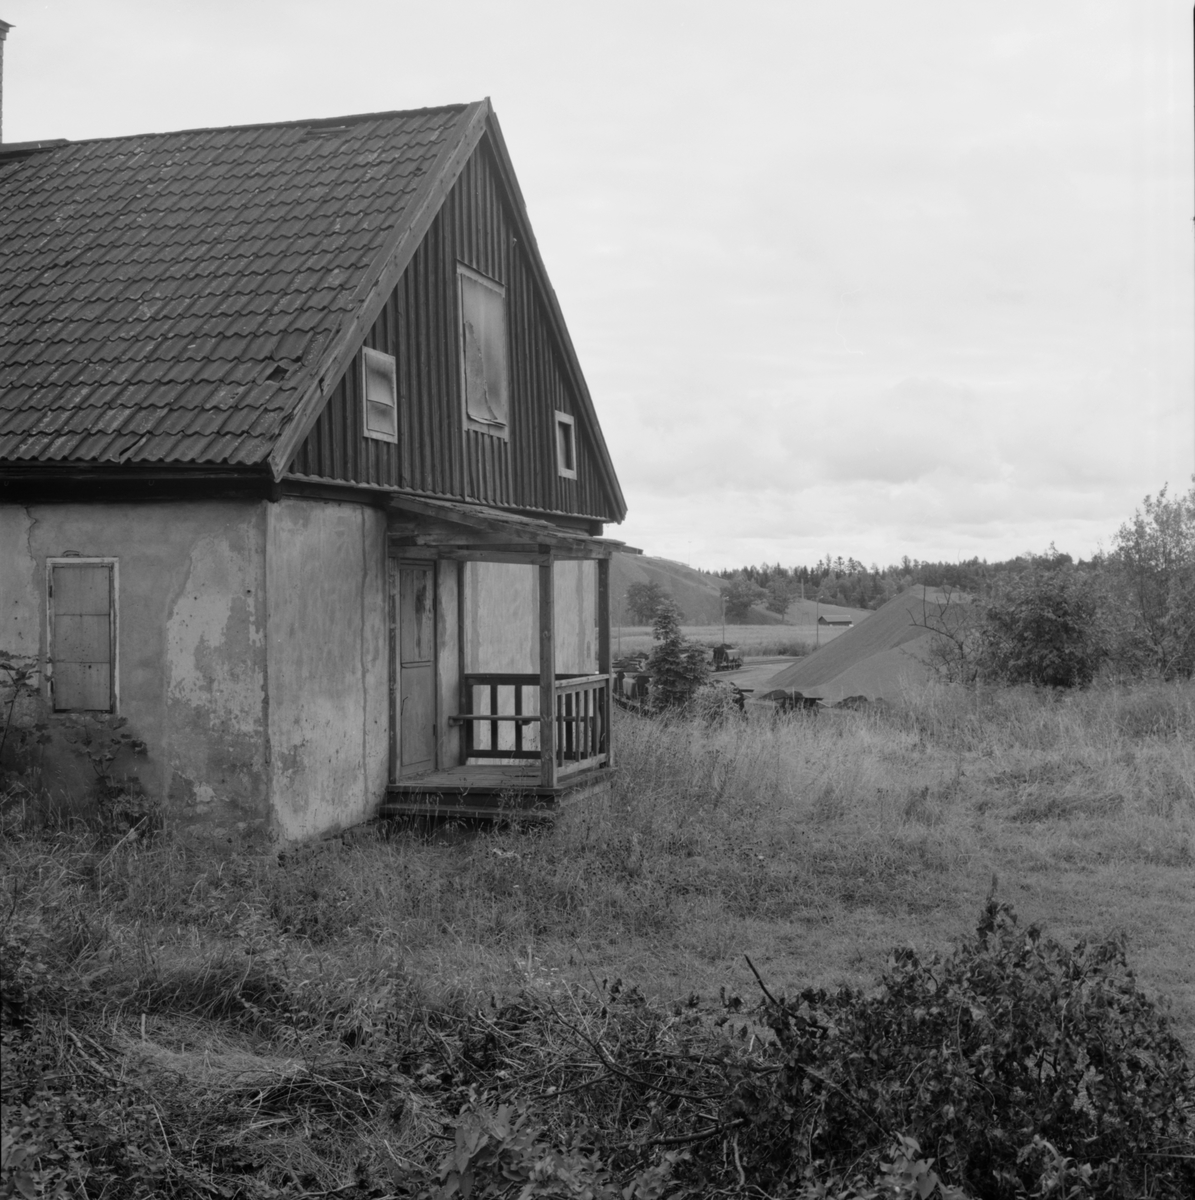 "Konstkarlsbyggningen", bostadslänga i stöphusteknik, Dannemora Gruvor AB, Dannemora, Uppland september 1991